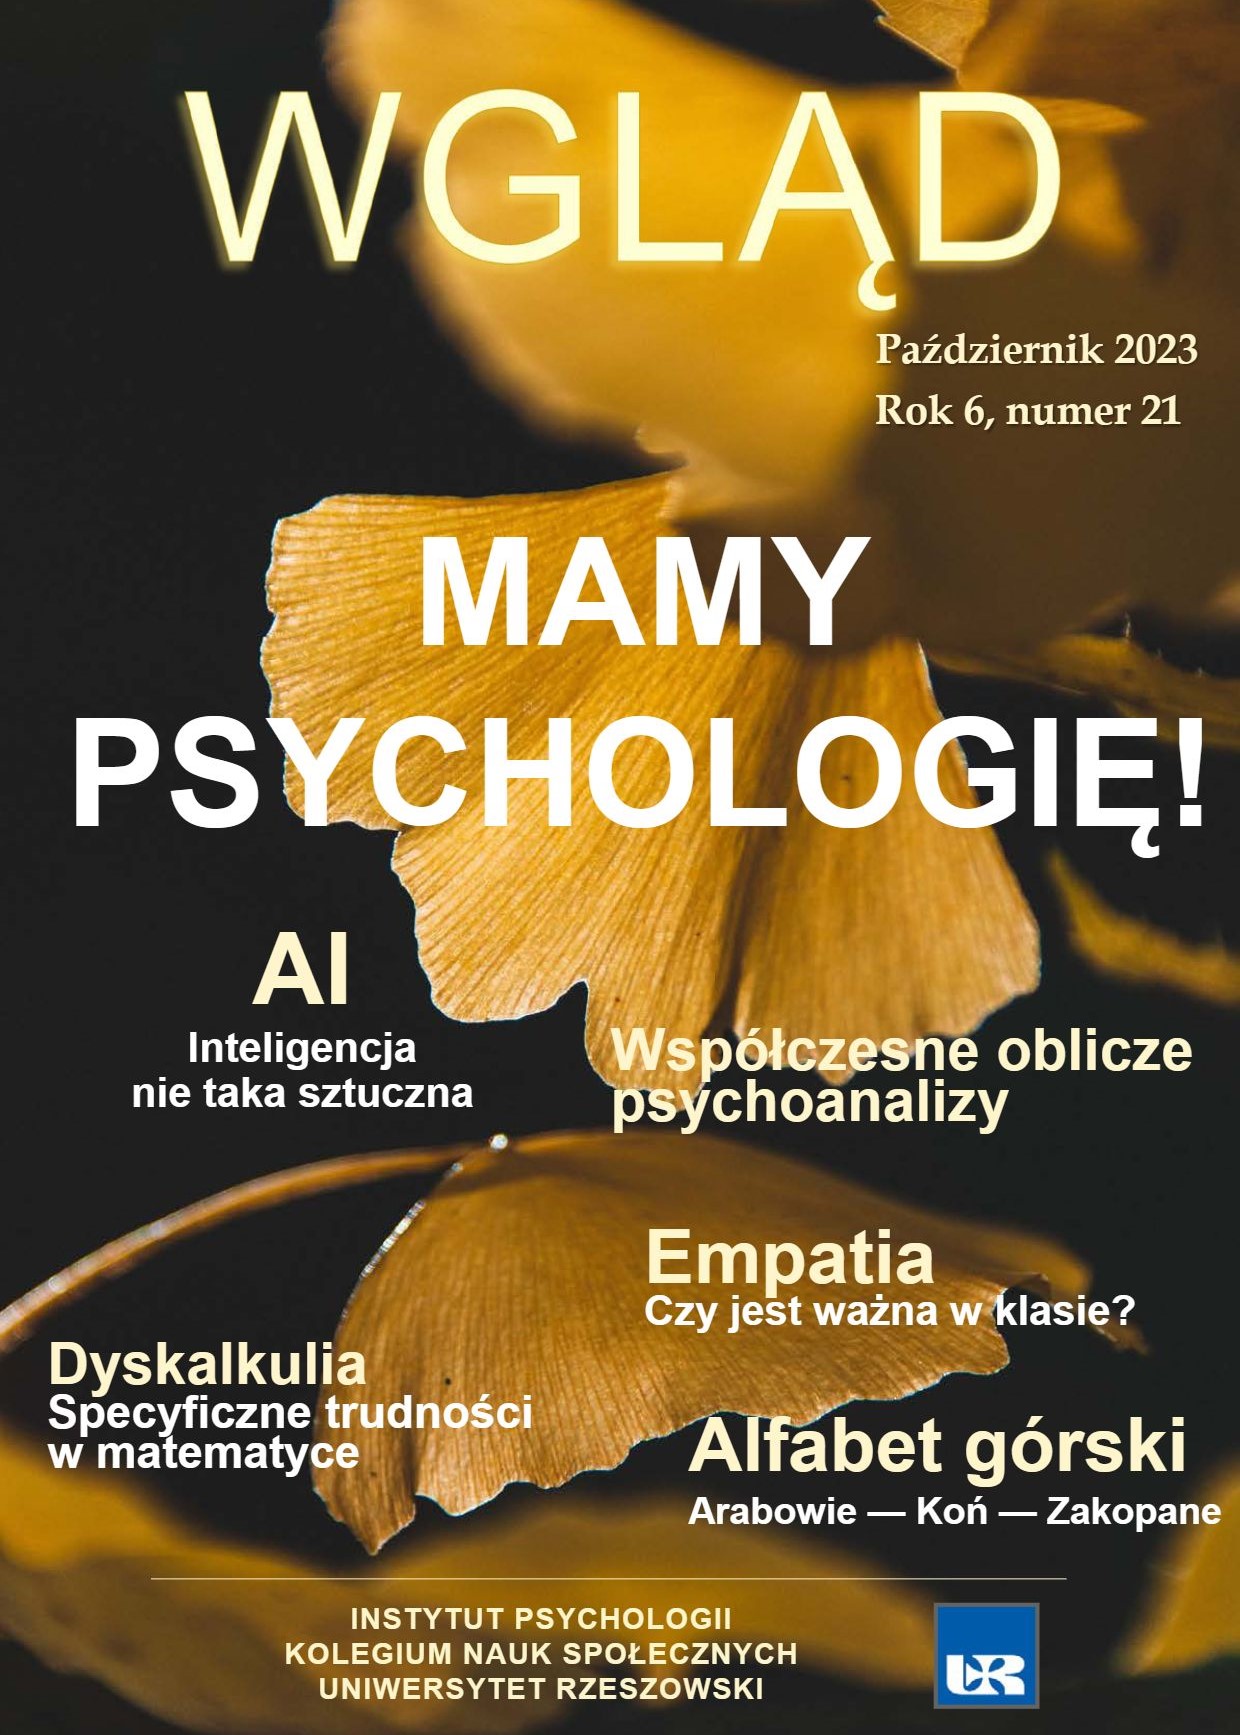 Nowy numer Biuletynu Psychologicznego "Wgląd"